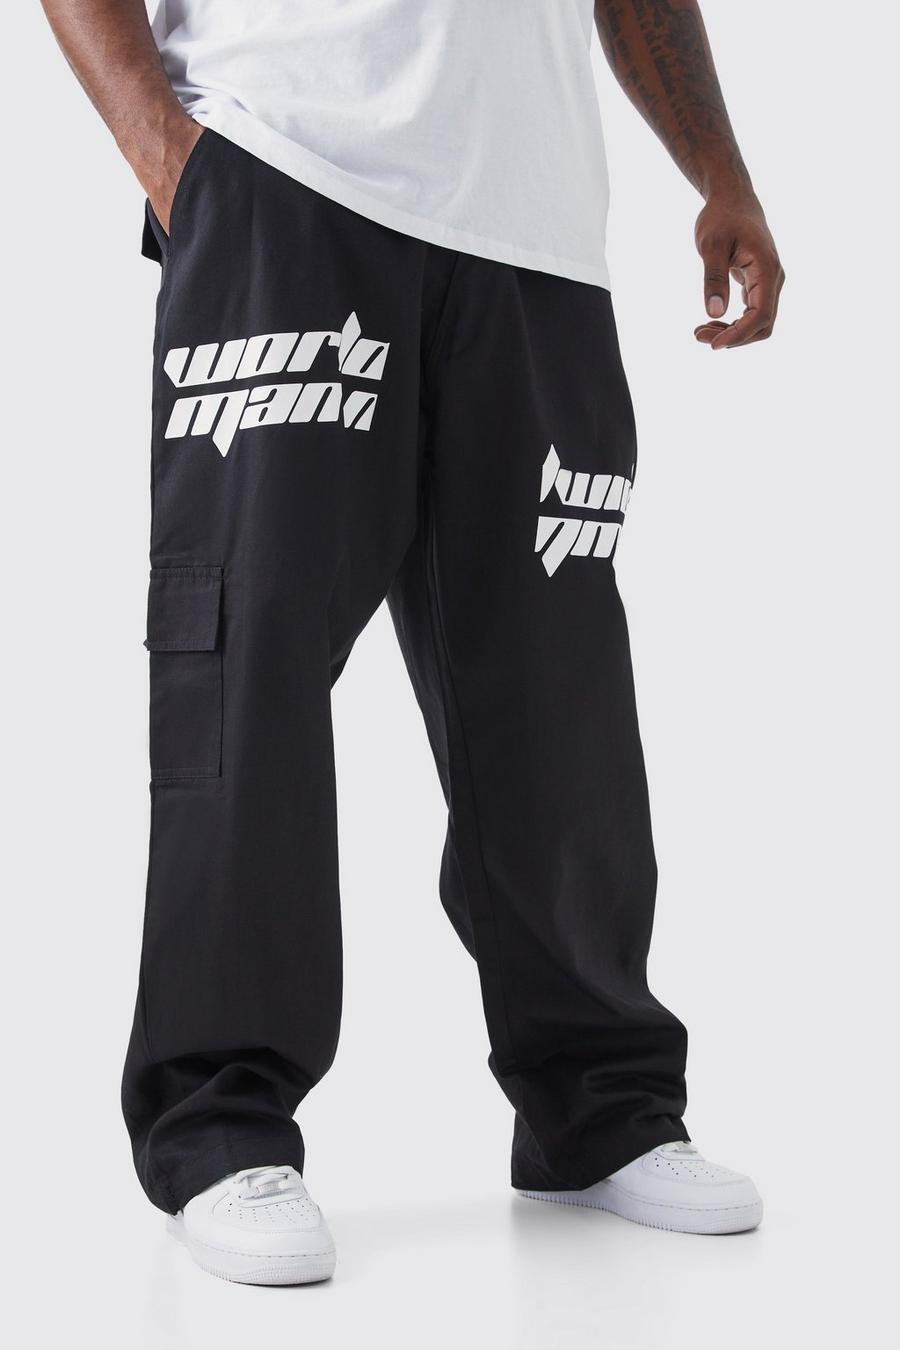 Pantaloni Cargo Plus Size rilassati con stampa di testo effetto patchwork, Black negro